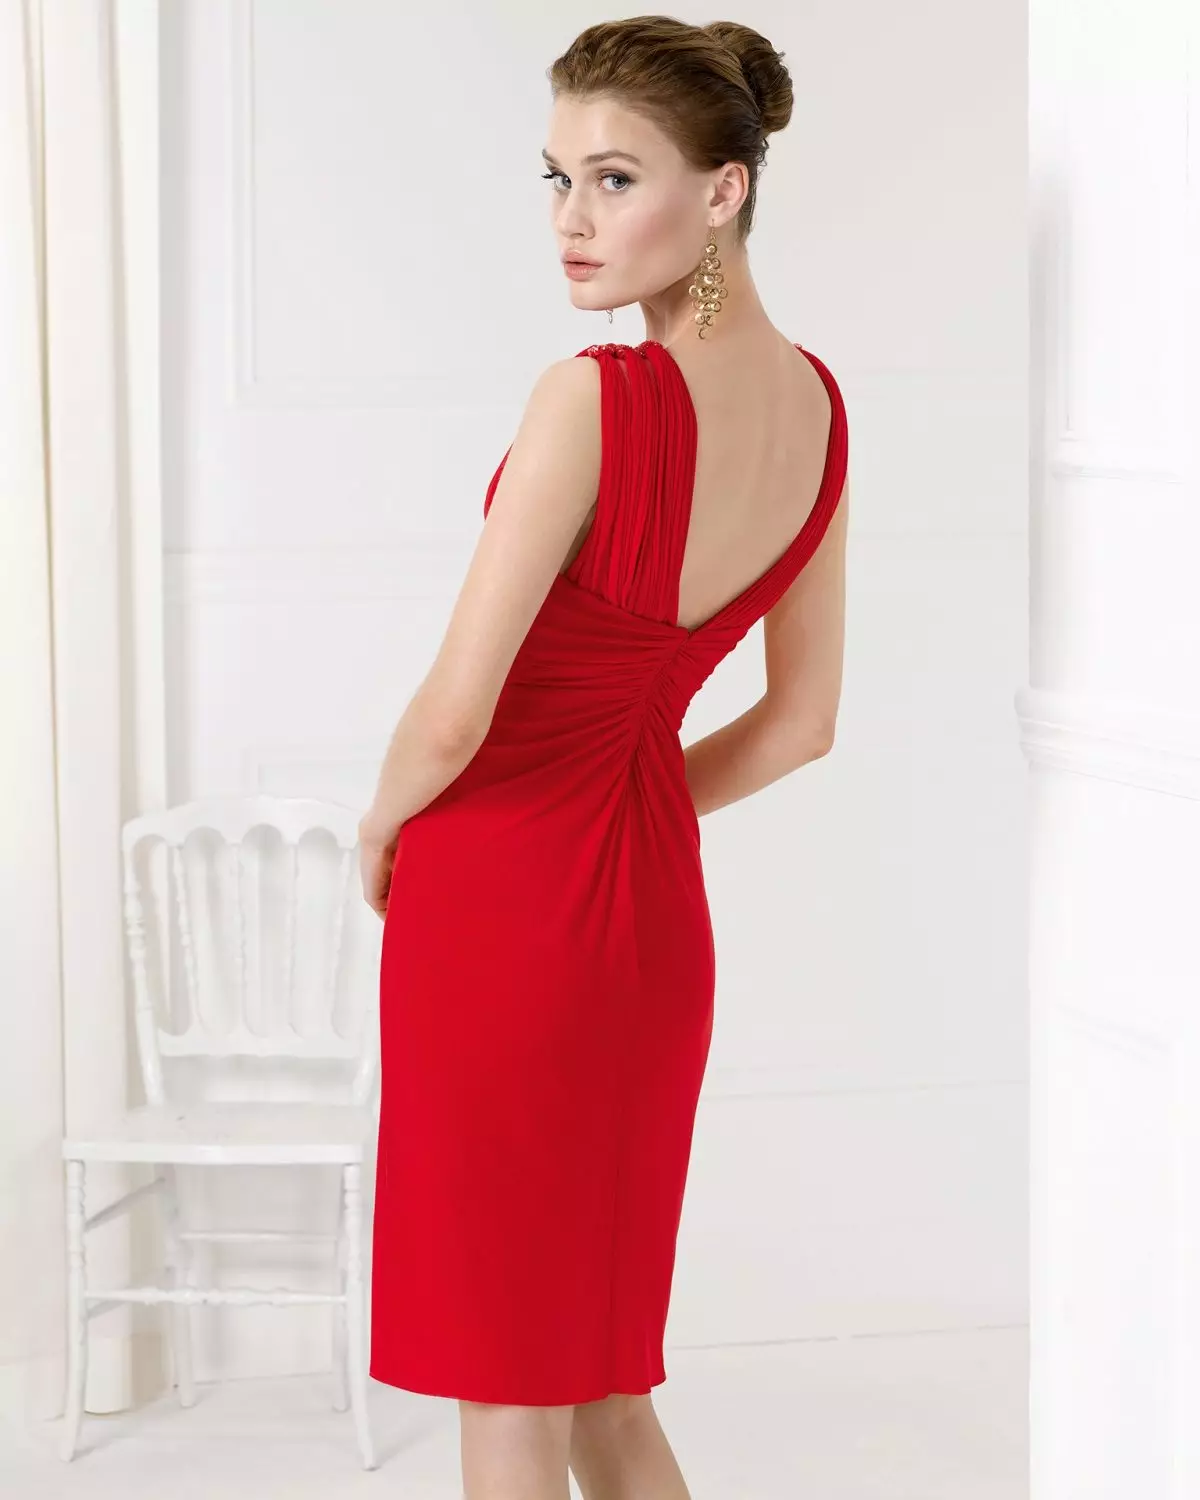 Rød kjole med åben ryg